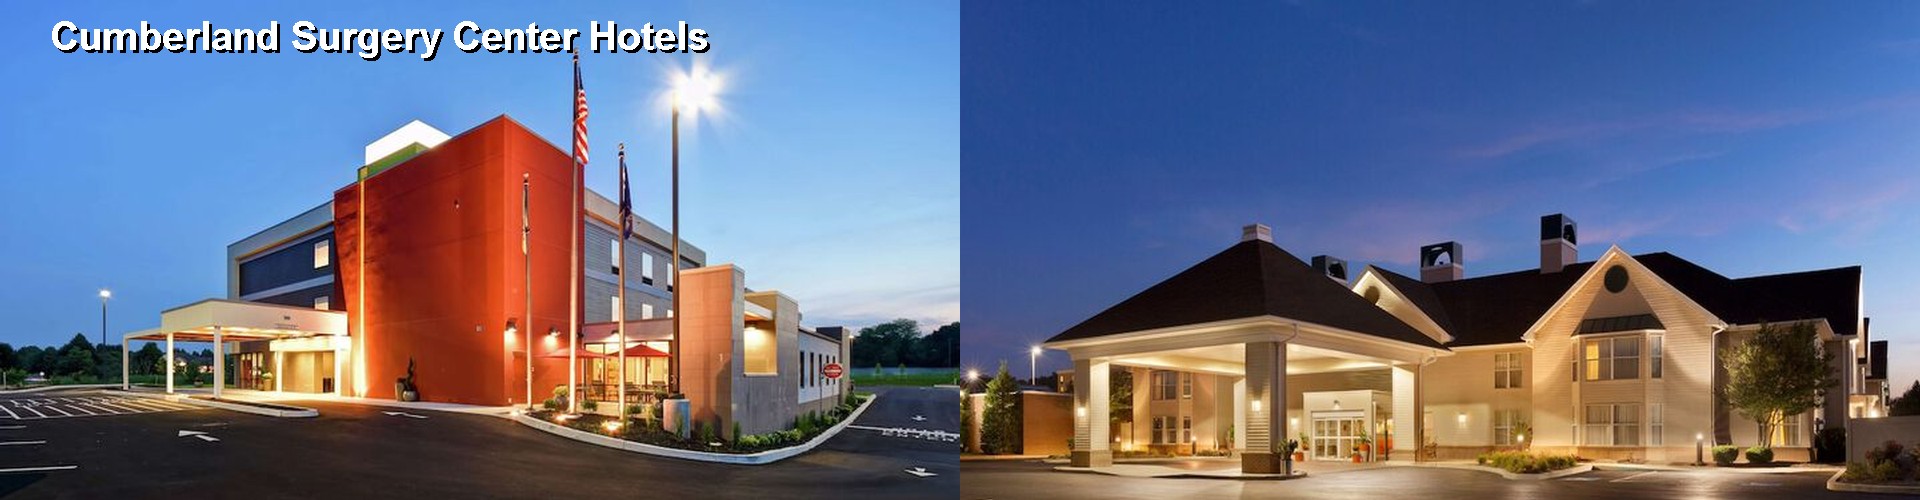 5 Best Hotels near Cumberland Surgery Center